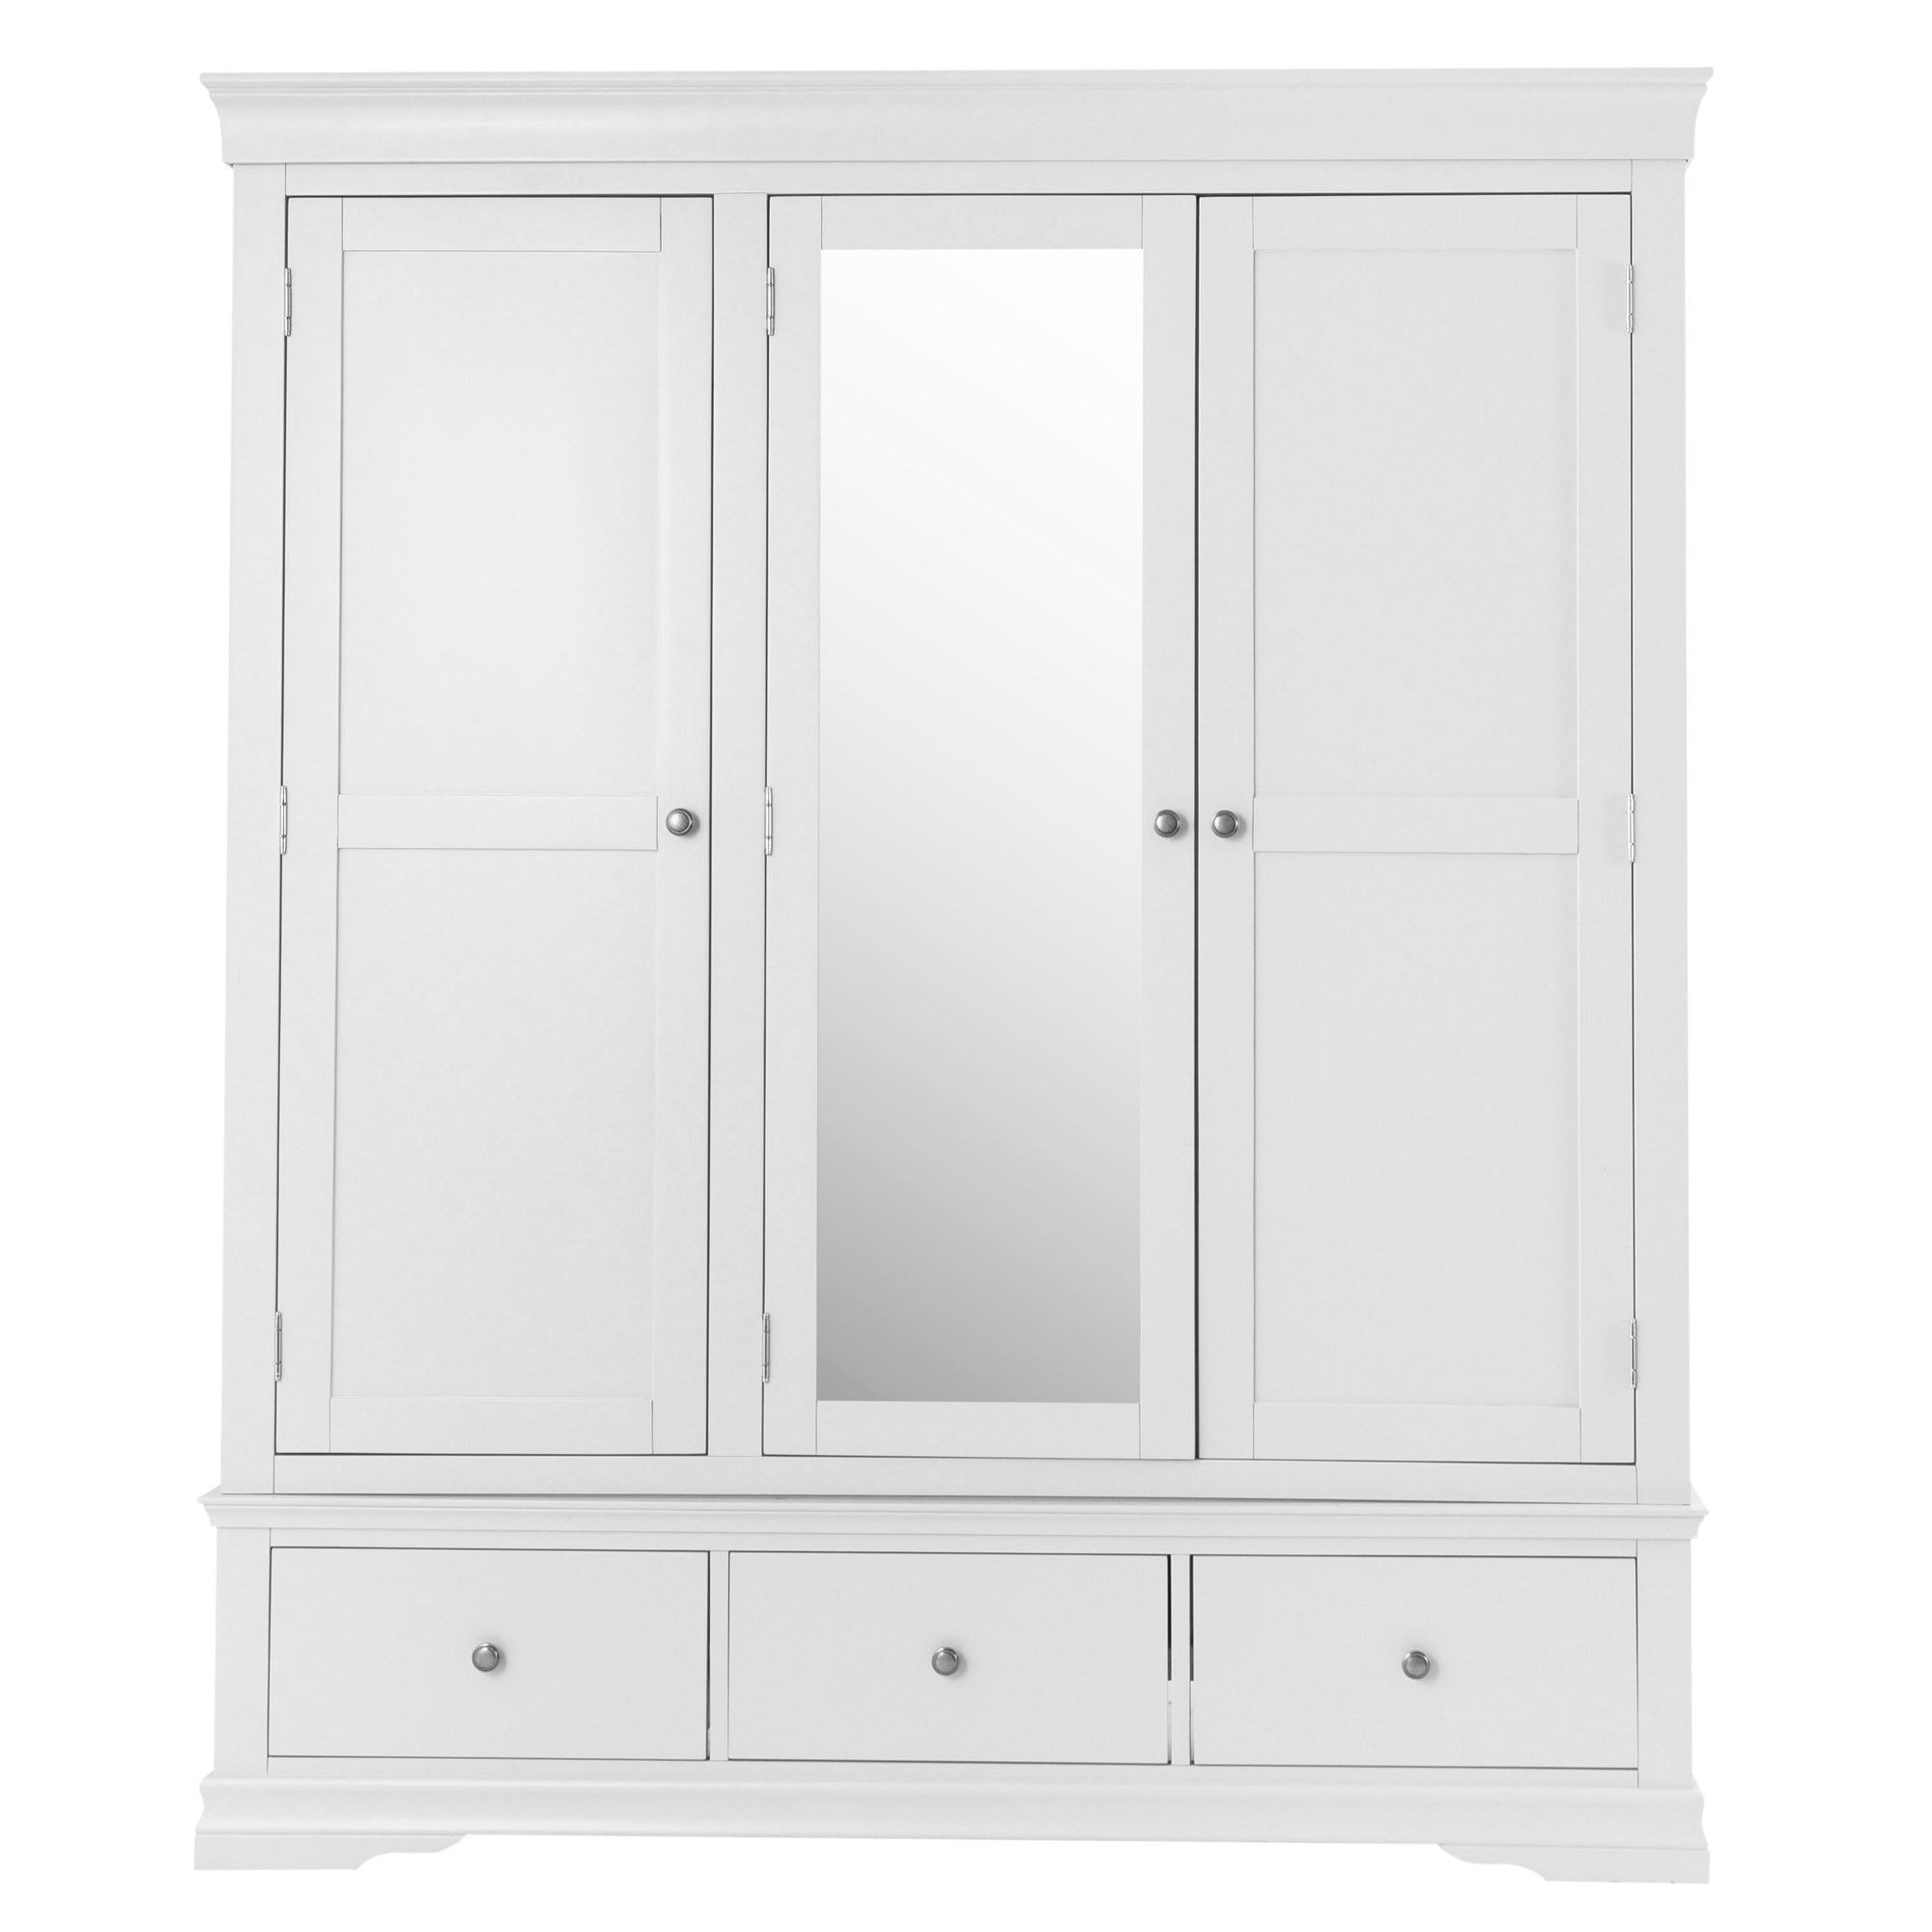 Swindon White 3 Door 3 Drawer Wardrobe | White Wardrobe | White Wooden  Wardrobe Inside White Wooden Wardrobes (View 3 of 20)